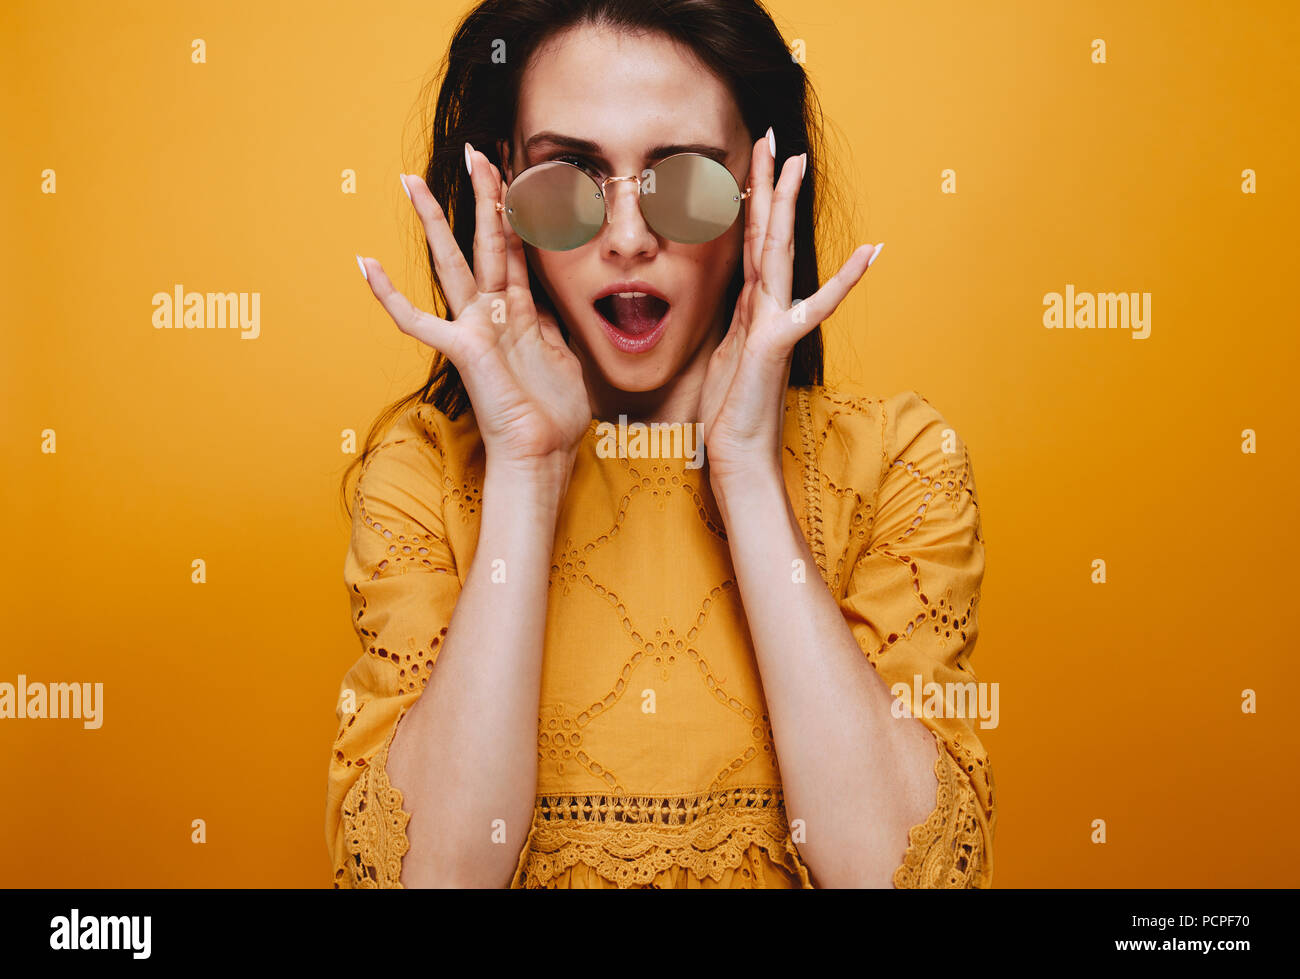 Ritratto del bellissimo modello femminile indossando occhiali da sole funky. Attraente giovane donna in abito arancione guardando la fotocamera con la bocca aperta. Foto Stock